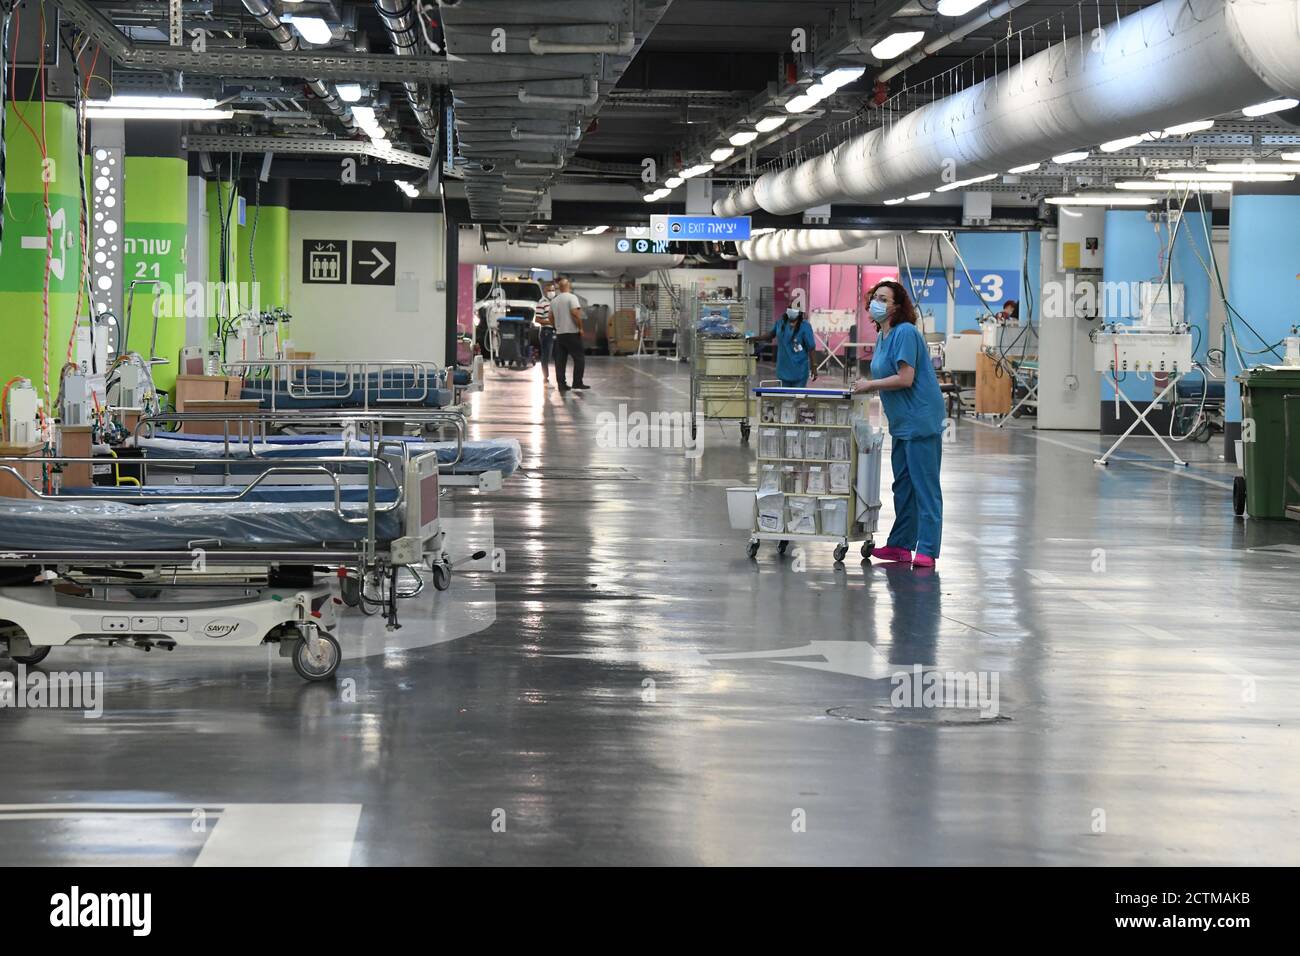 (200924) -- HAIFA, 24. September 2020 (Xinhua) -- Medizinische Arbeiter bereiten sich auf die Eröffnung einer neuen COVID-19 Station vor, die am 23. September 2020 von einer Tiefgarage auf dem Rambam Health Care Campus in der nordisraelischen Stadt Haifa umgestaltet wurde. Das israelische Gesundheitsministerium meldete am Mittwoch 11,316 neue Coronavirus-Fälle, womit die Gesamtzahl der bestätigten Fälle auf 204,690 anwachsen würde. Die Gesamtzahl der Todesfälle erreichte 1,325, mit 40 neuen Todesfällen, während die Zahl der Patienten in ernstem Zustand von 668 auf 657 zurückging, von 1,370 Patienten, die derzeit hospitalisiert sind. (JINI via Xinhua) Stockfoto